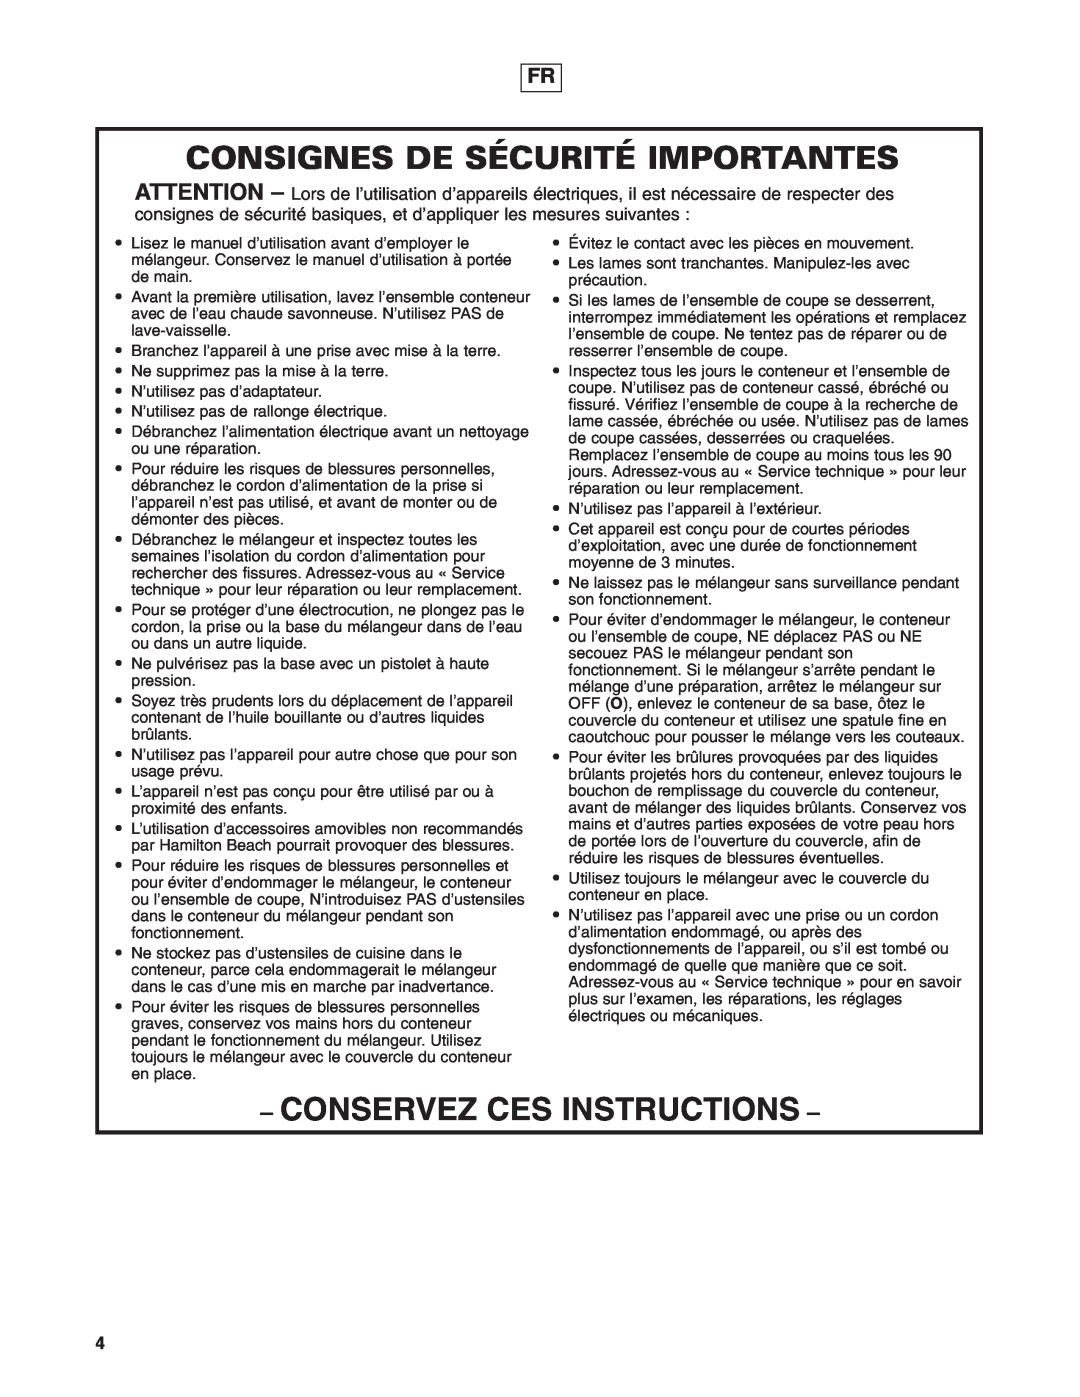 Hamilton Beach 908 Series operation manual Consignes De Sécurité Importantes, Conservez Ces Instructions 